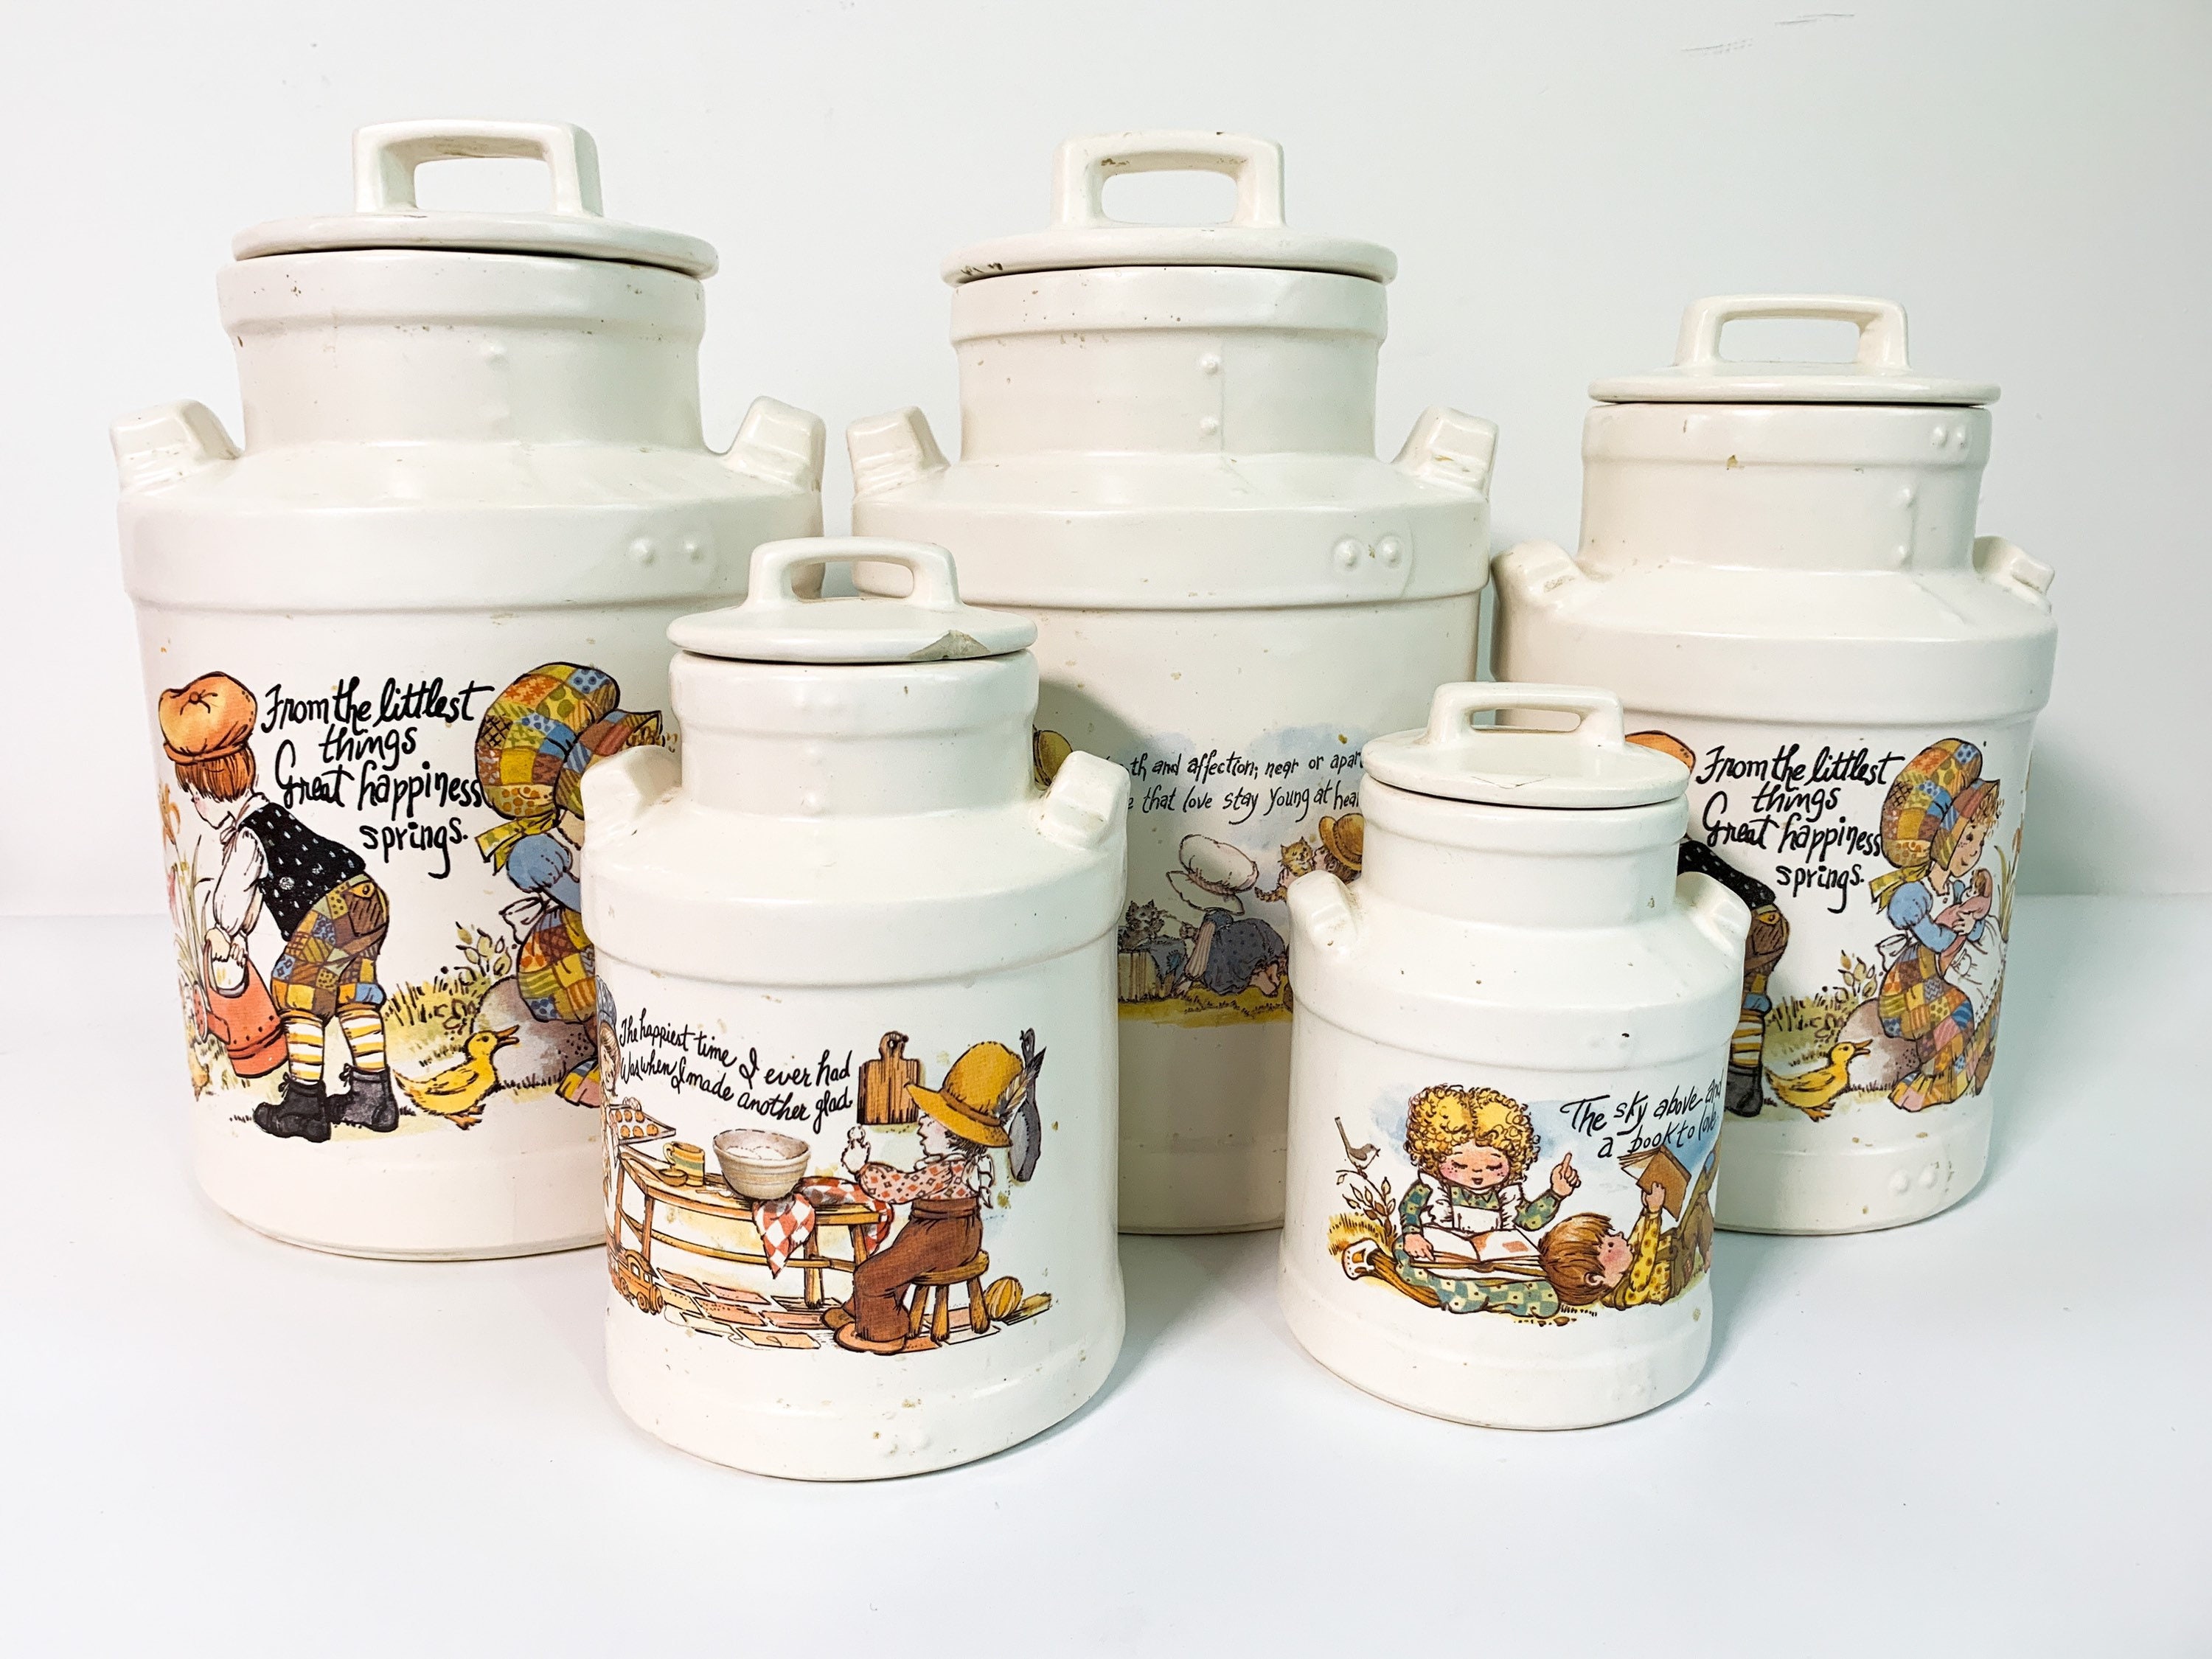 Vintage Ceramic Jar with Lid